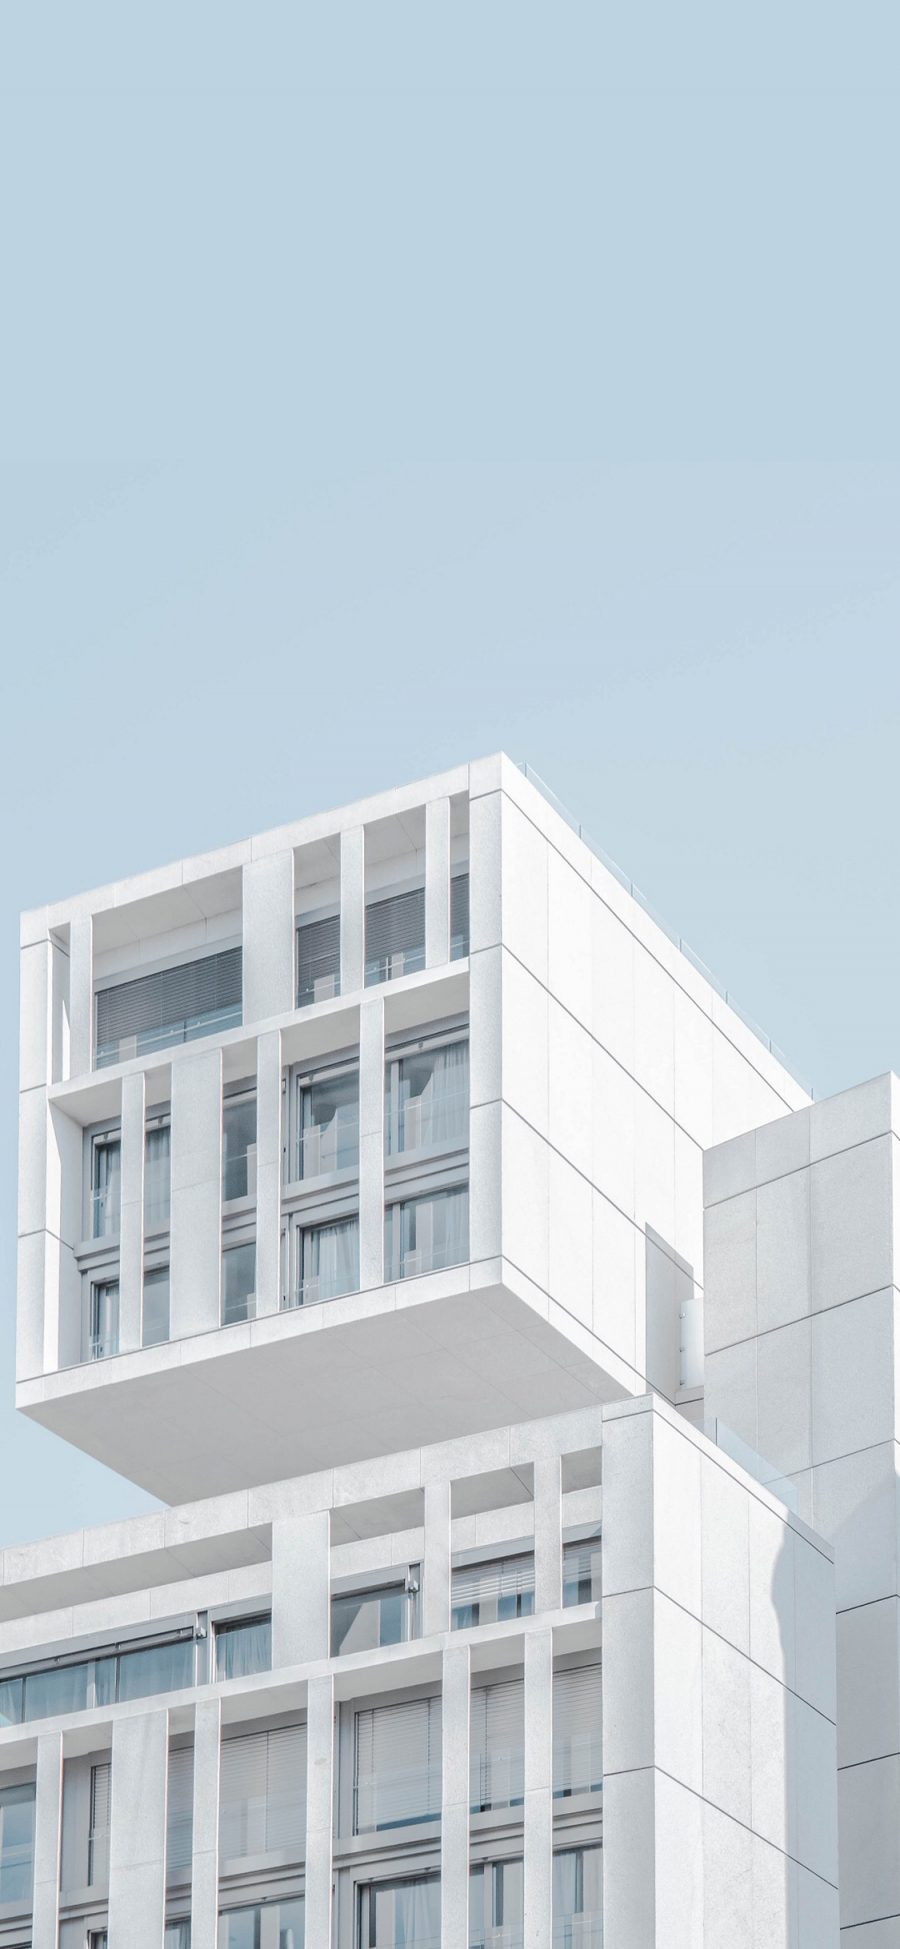 [2436×1125]楼房 建筑 小清新 蓝天 简约 窗 苹果手机壁纸图片